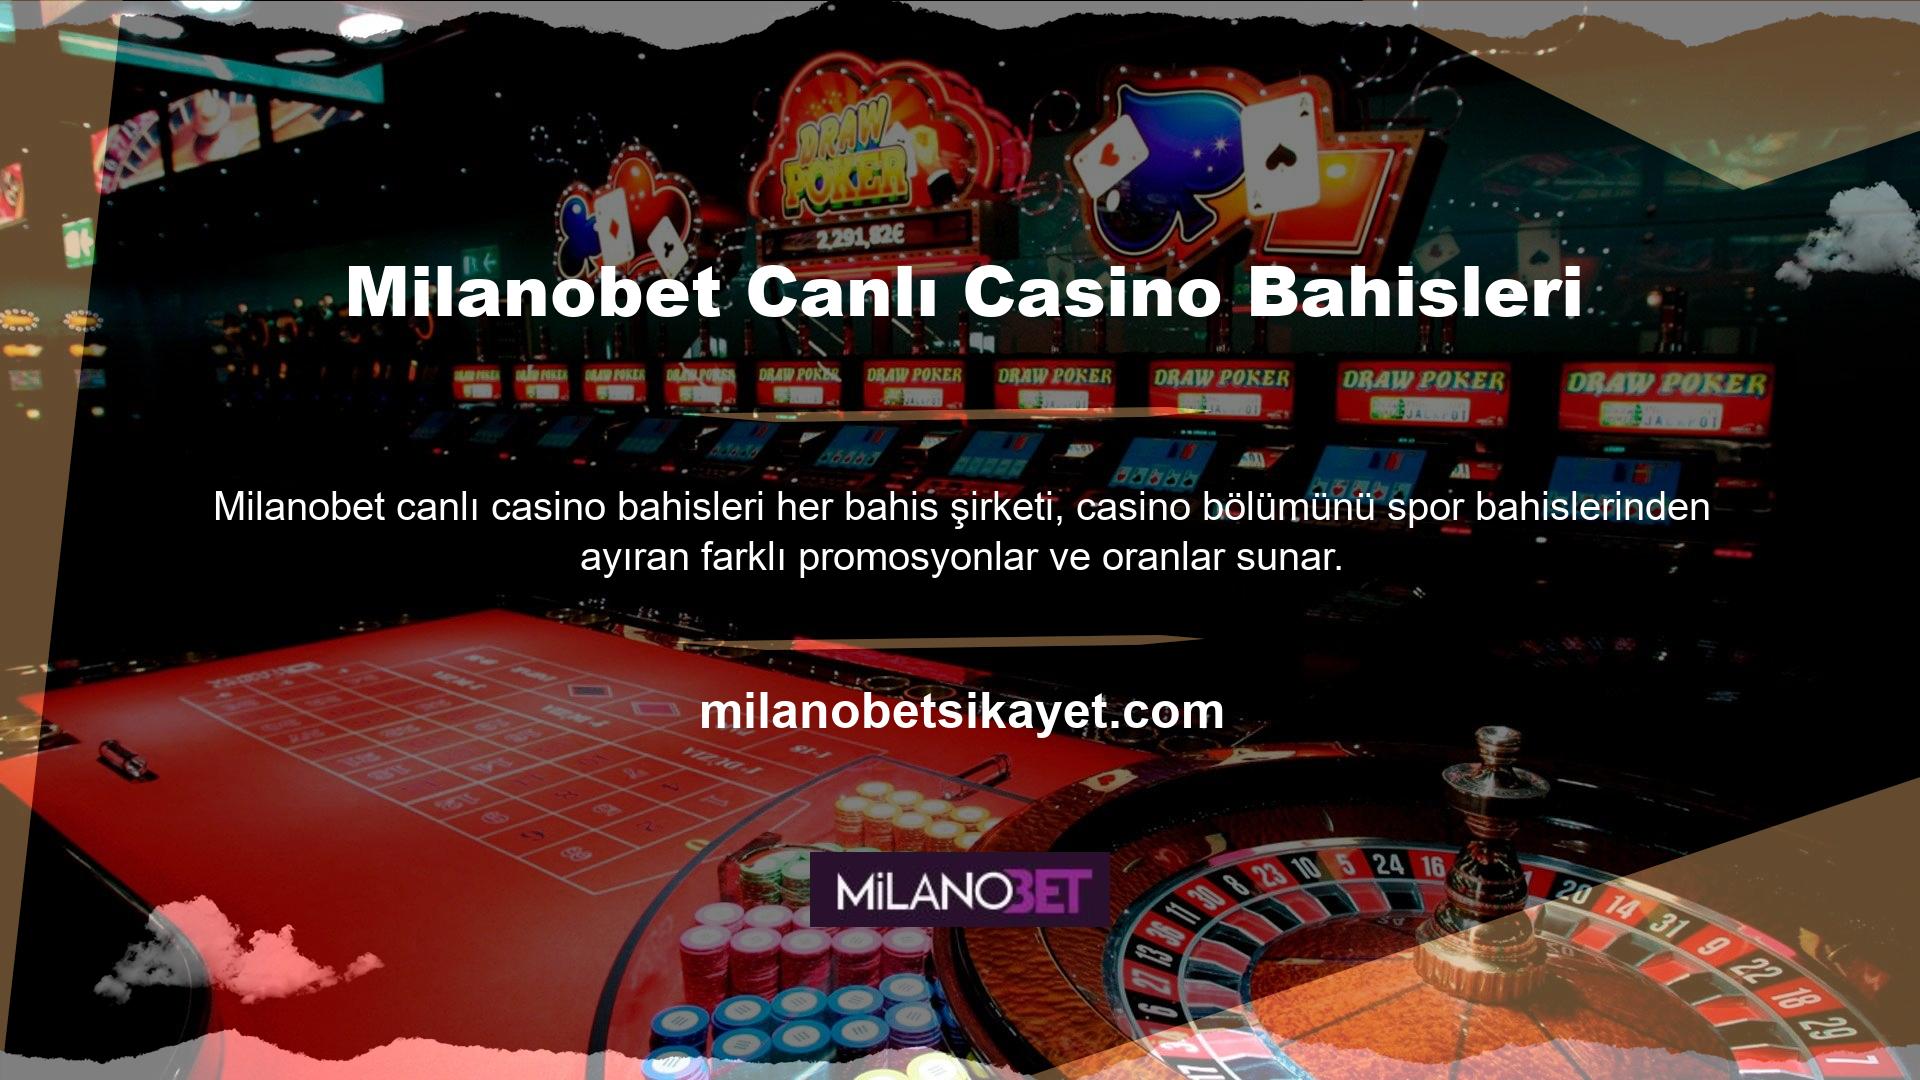 Öte yandan Milanobet Canlı Casino Bahis gibi bahisçileri 3 statü ile paylaşan şirketler de var